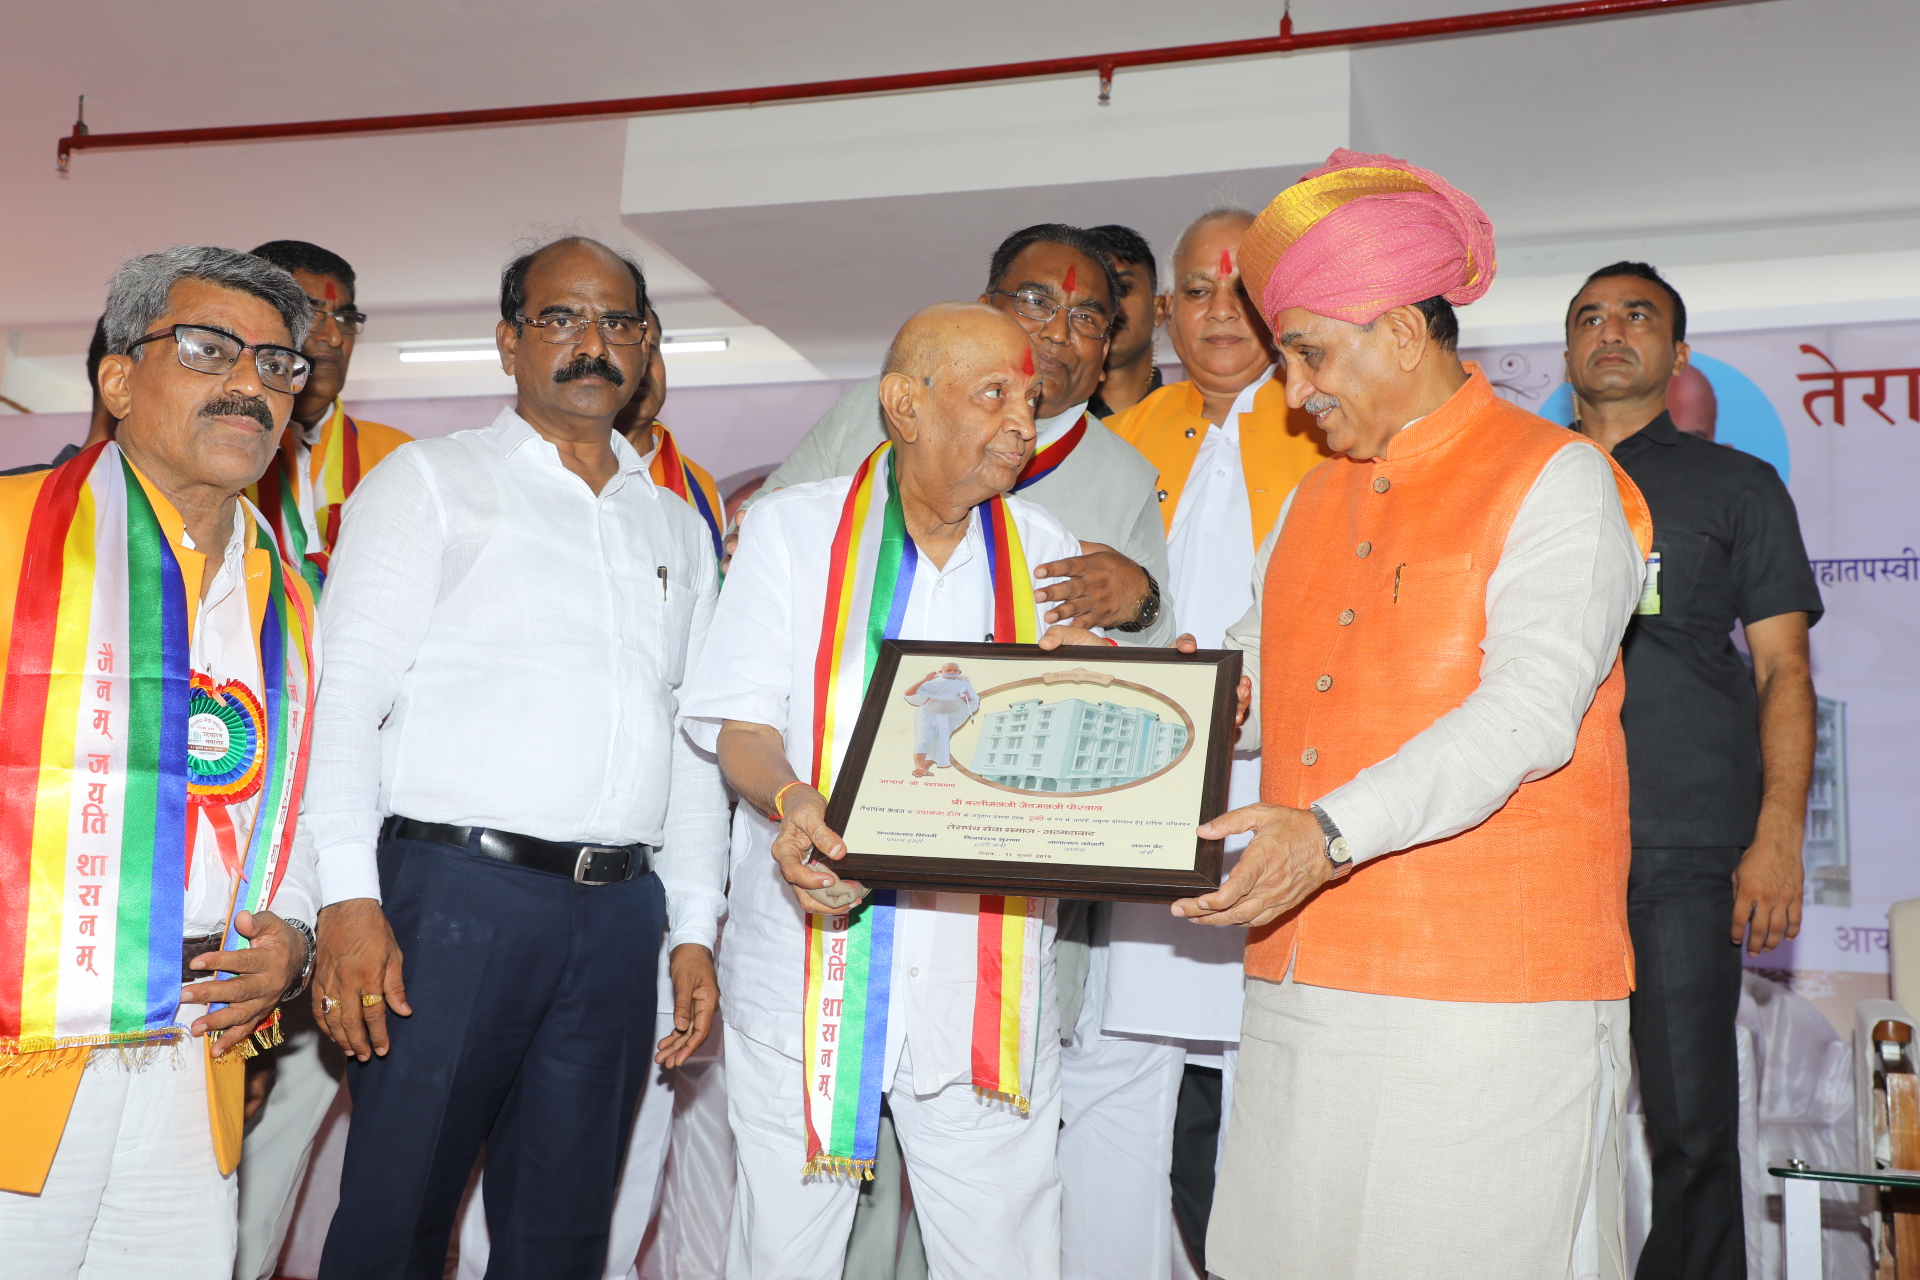 Terapanth Bhawan, Ahmedabad, Gujarat CM Vijay Rupani